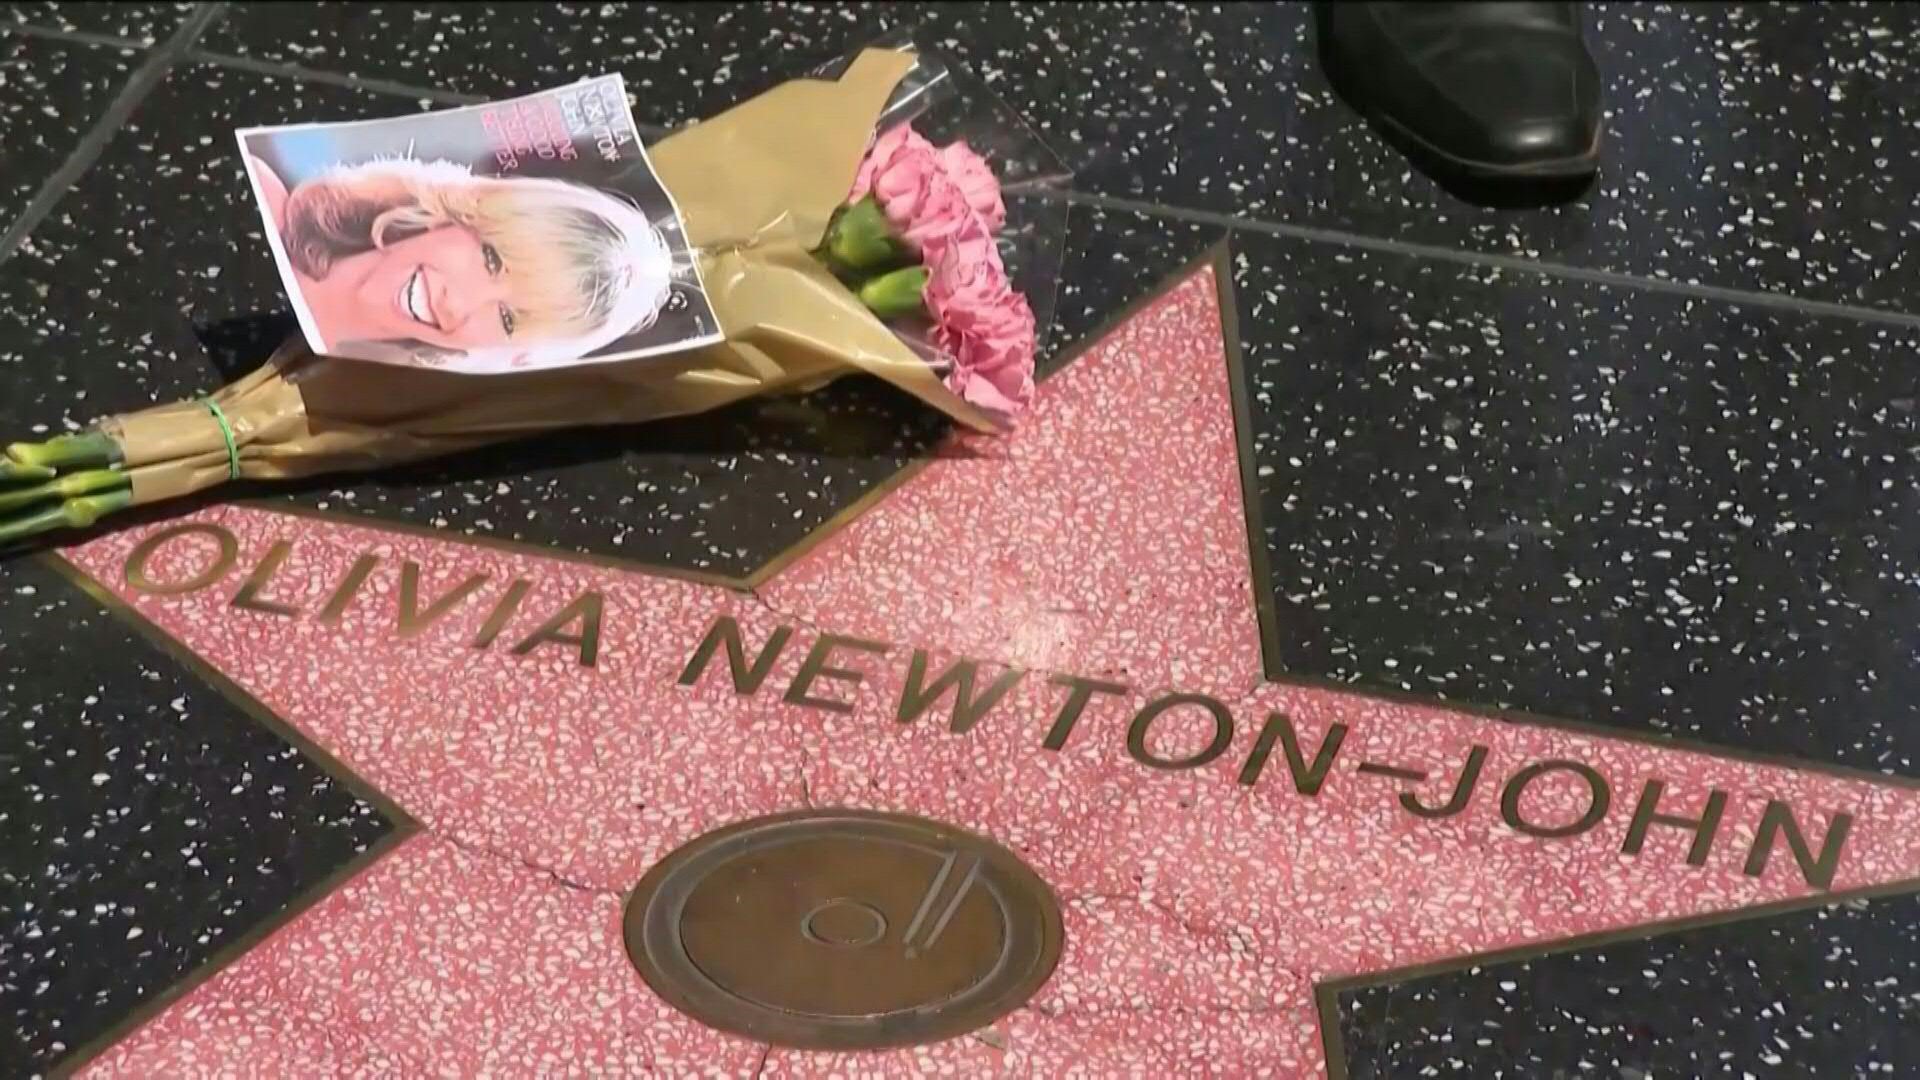 La actriz y cantante australiana Olivia Newton-John, estrella del taquillero film musical "Grease", murió el lunes a los 73 años tras una batalla de tres décadas contra el cáncer.